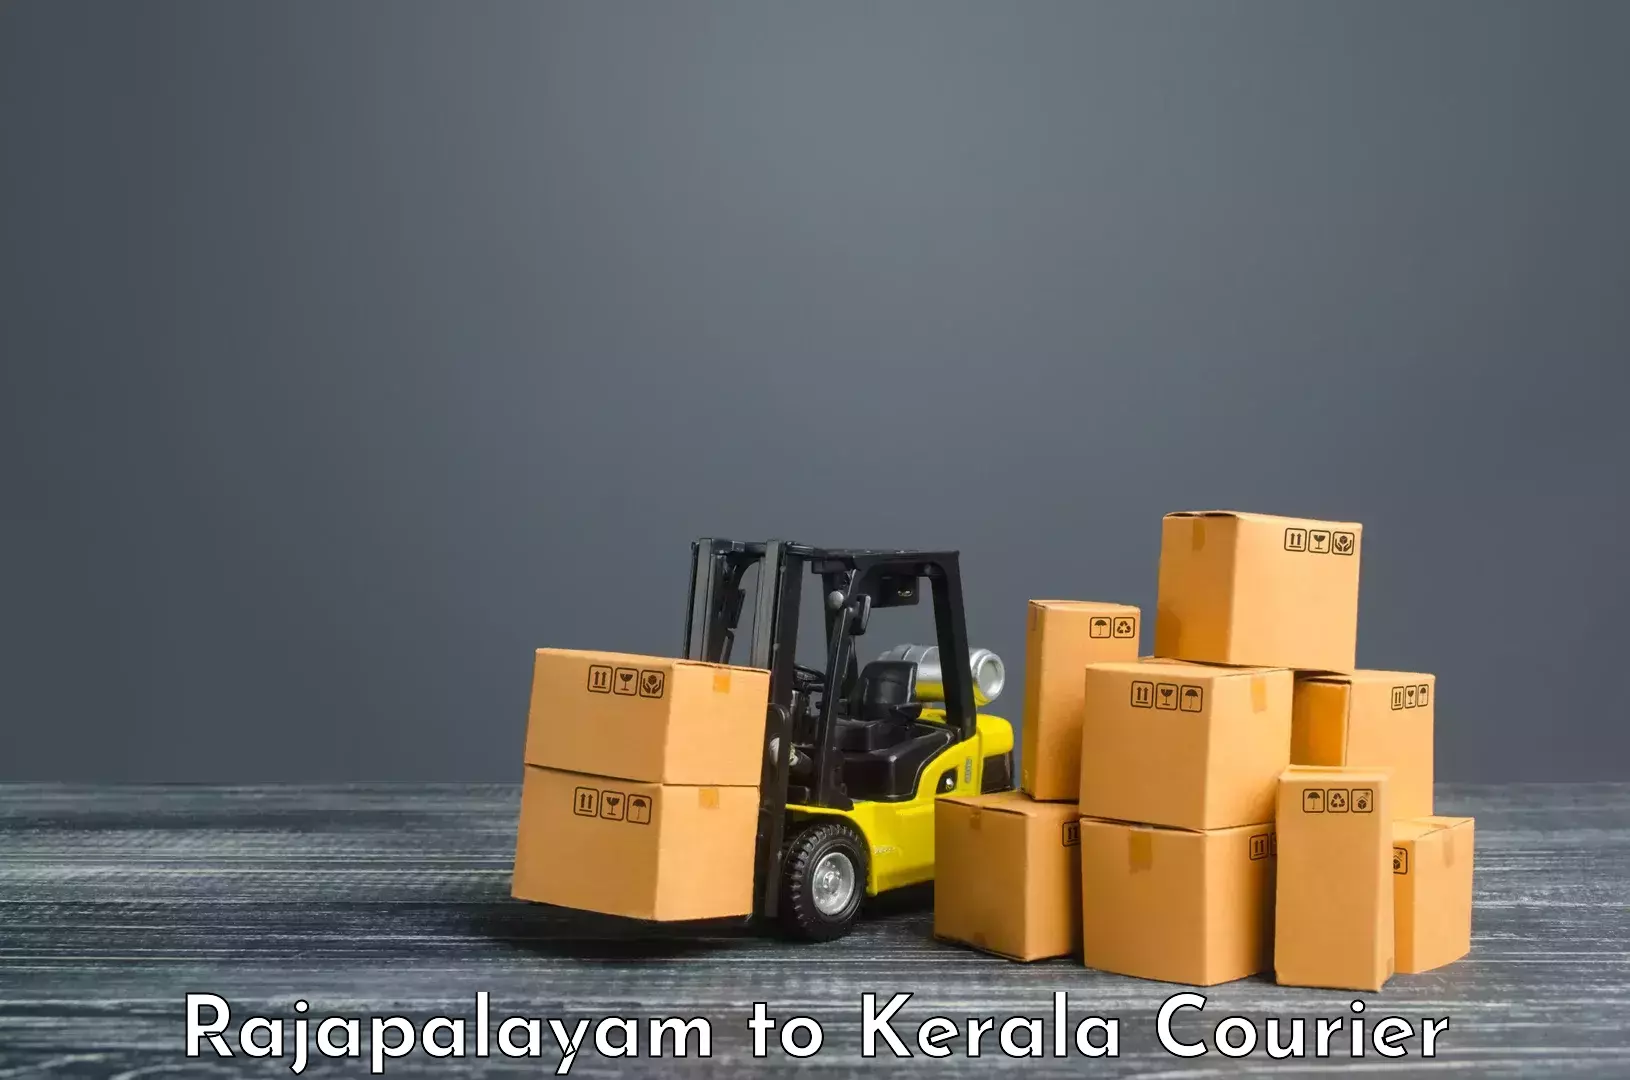 Courier service comparison Rajapalayam to Adur Kla